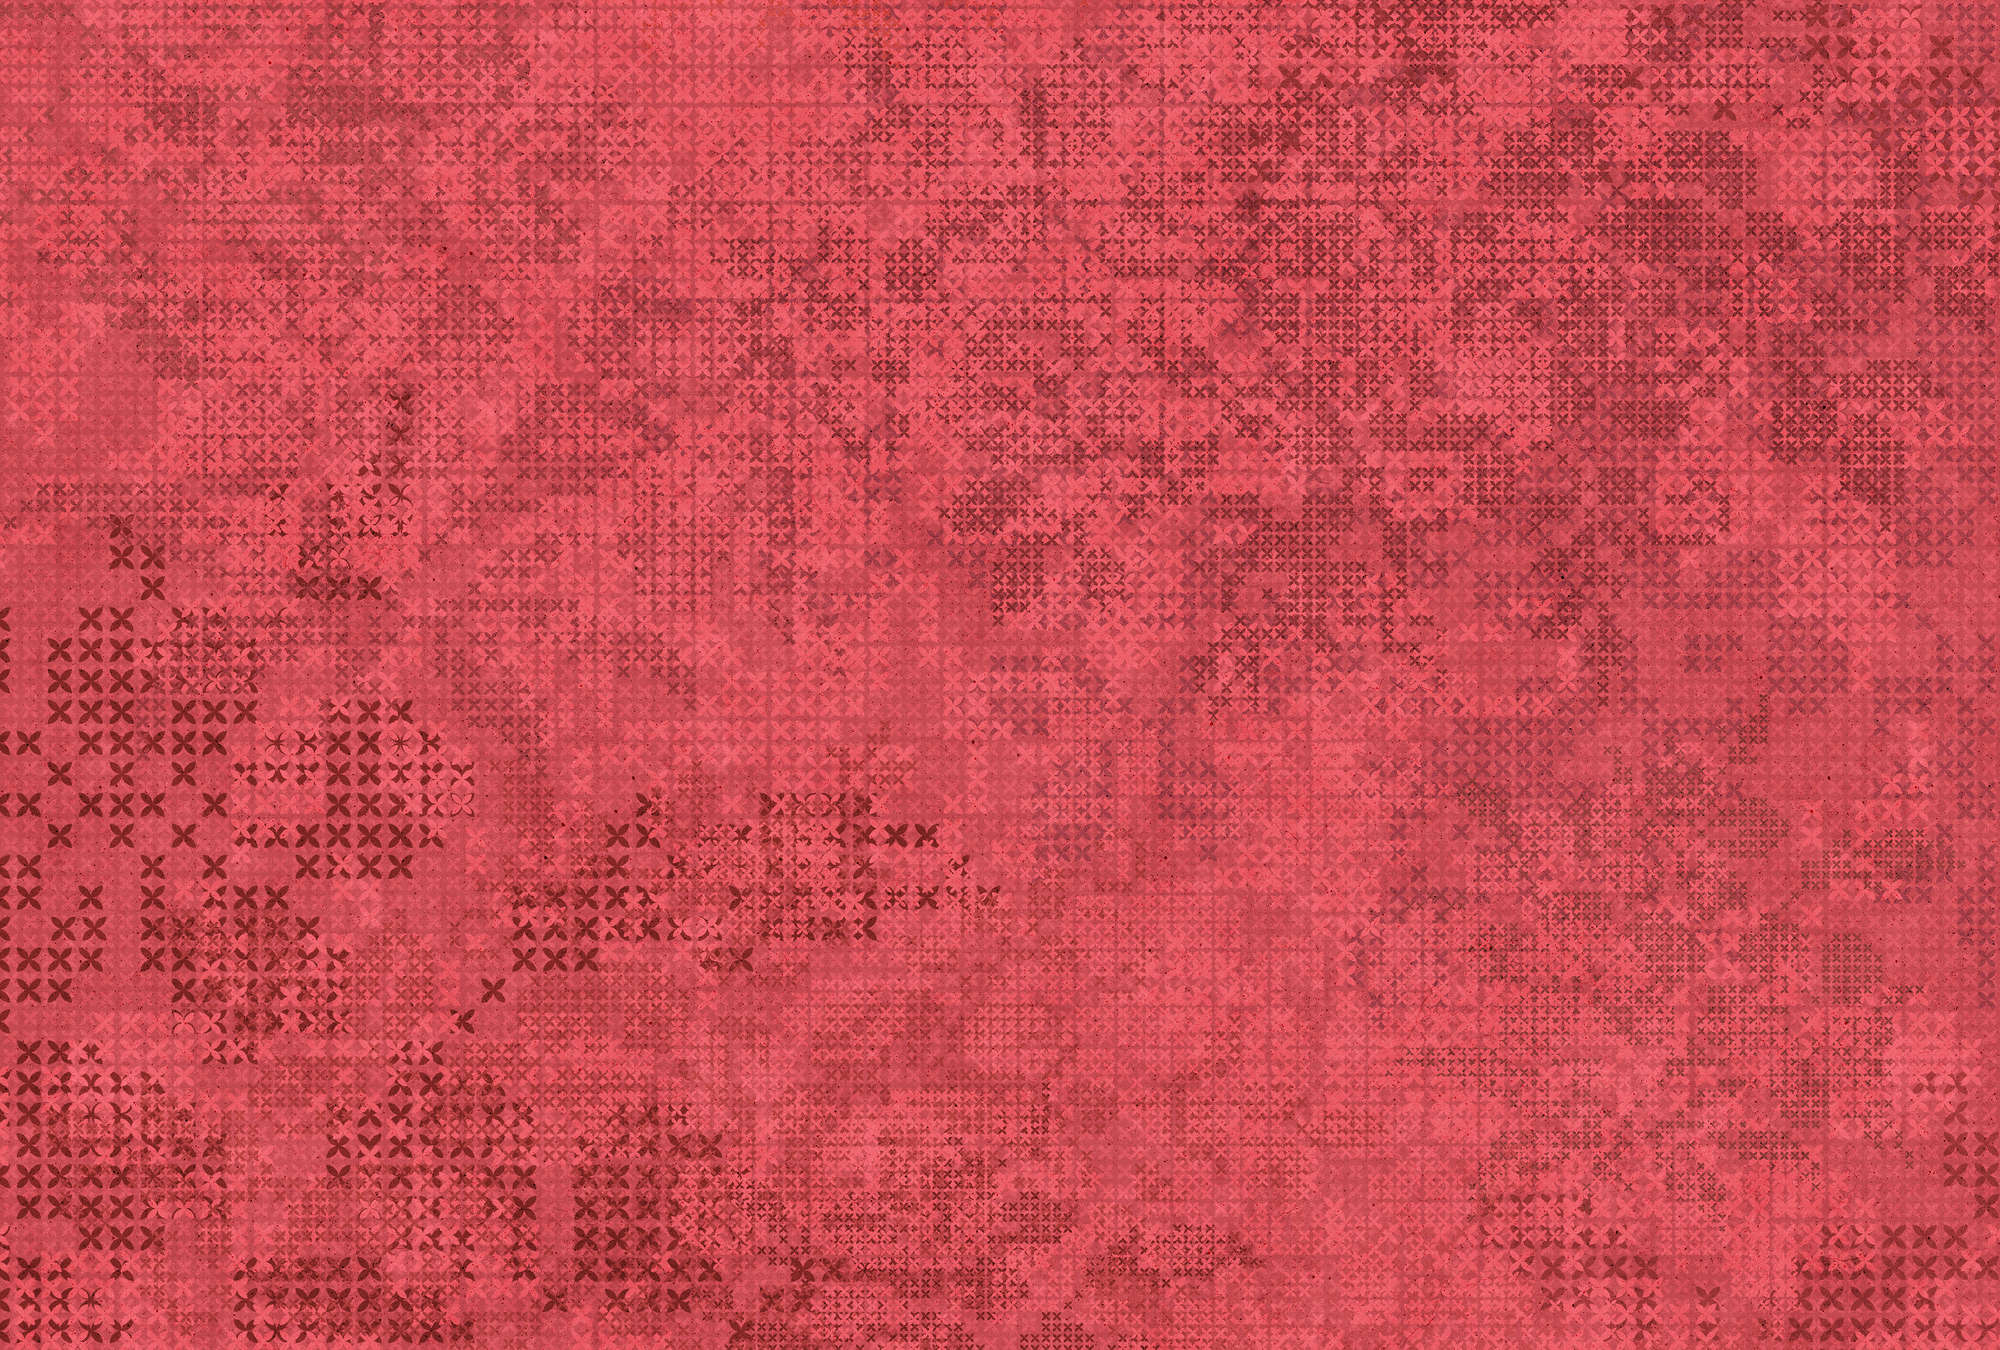             Het Kruissteekpatroon van het pixelbehang - Rood, Zwart
        